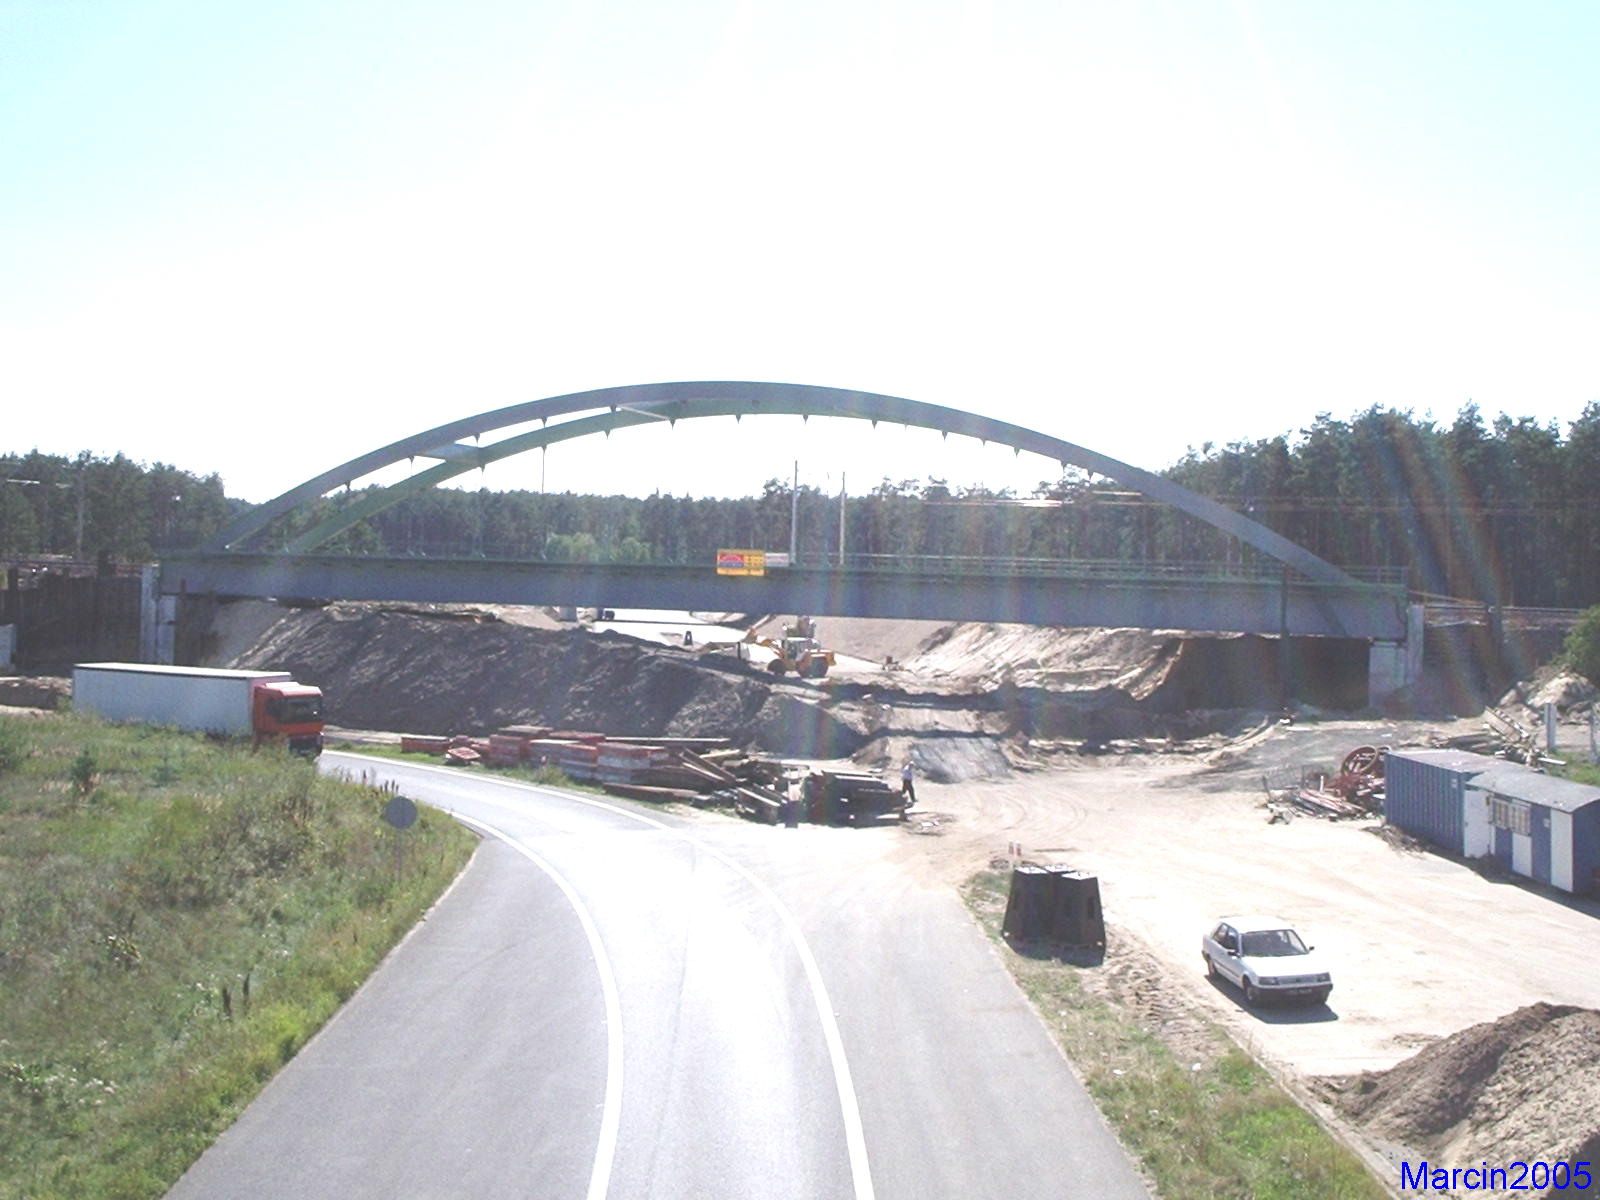 Budowa infrastruktury drogowej pod drogÄ ekspresowÄ